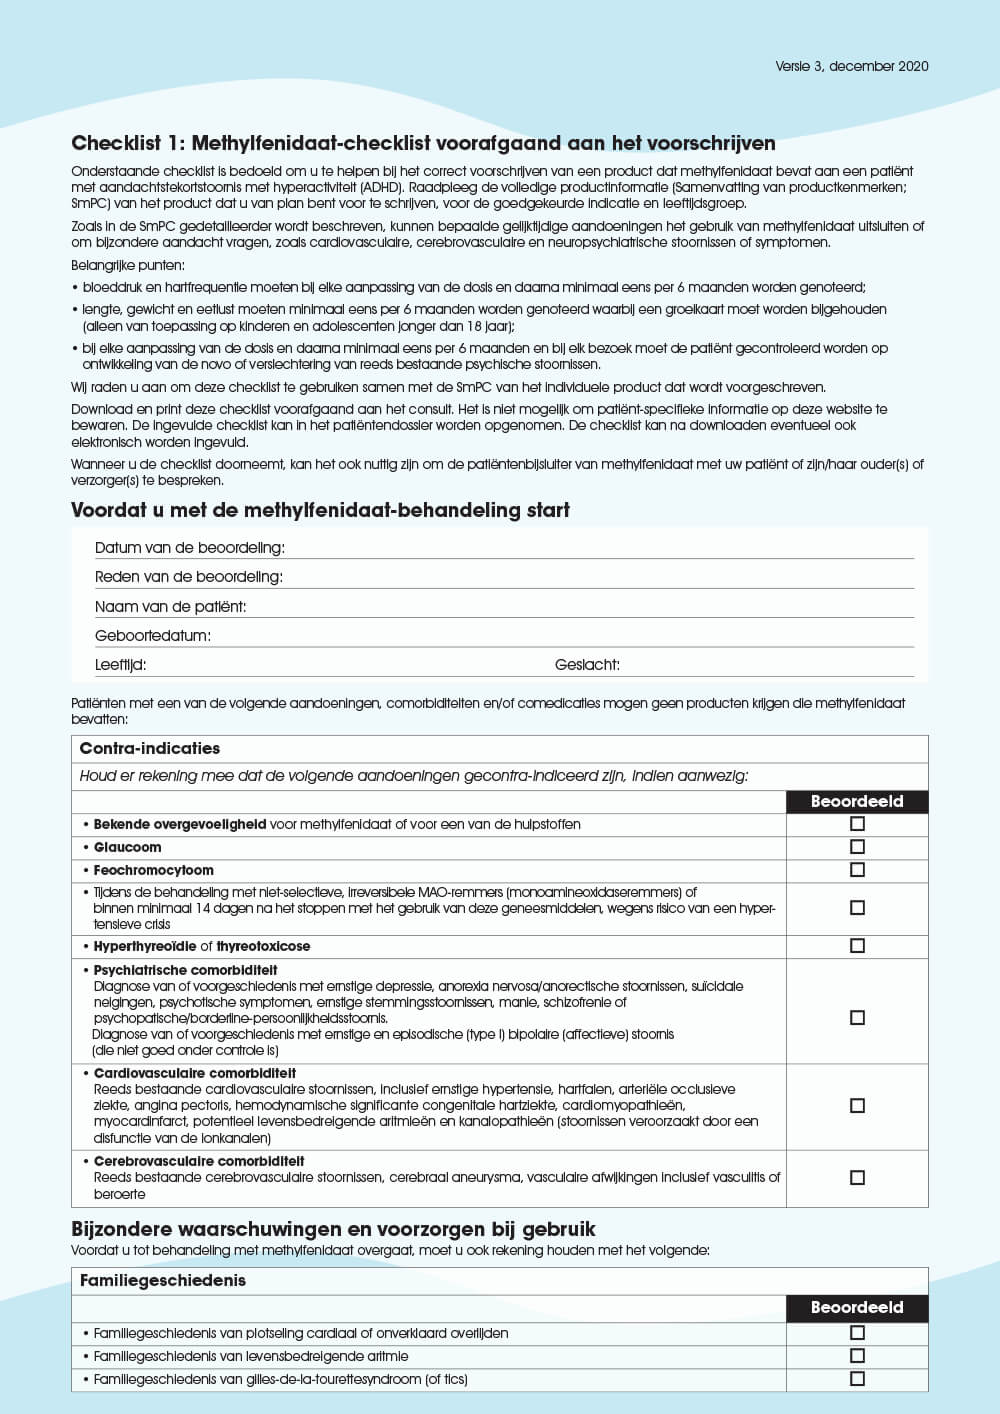 Preview: Checklist 1: Methylfenidaat-checklist voorafgaand aan het voorschrijven